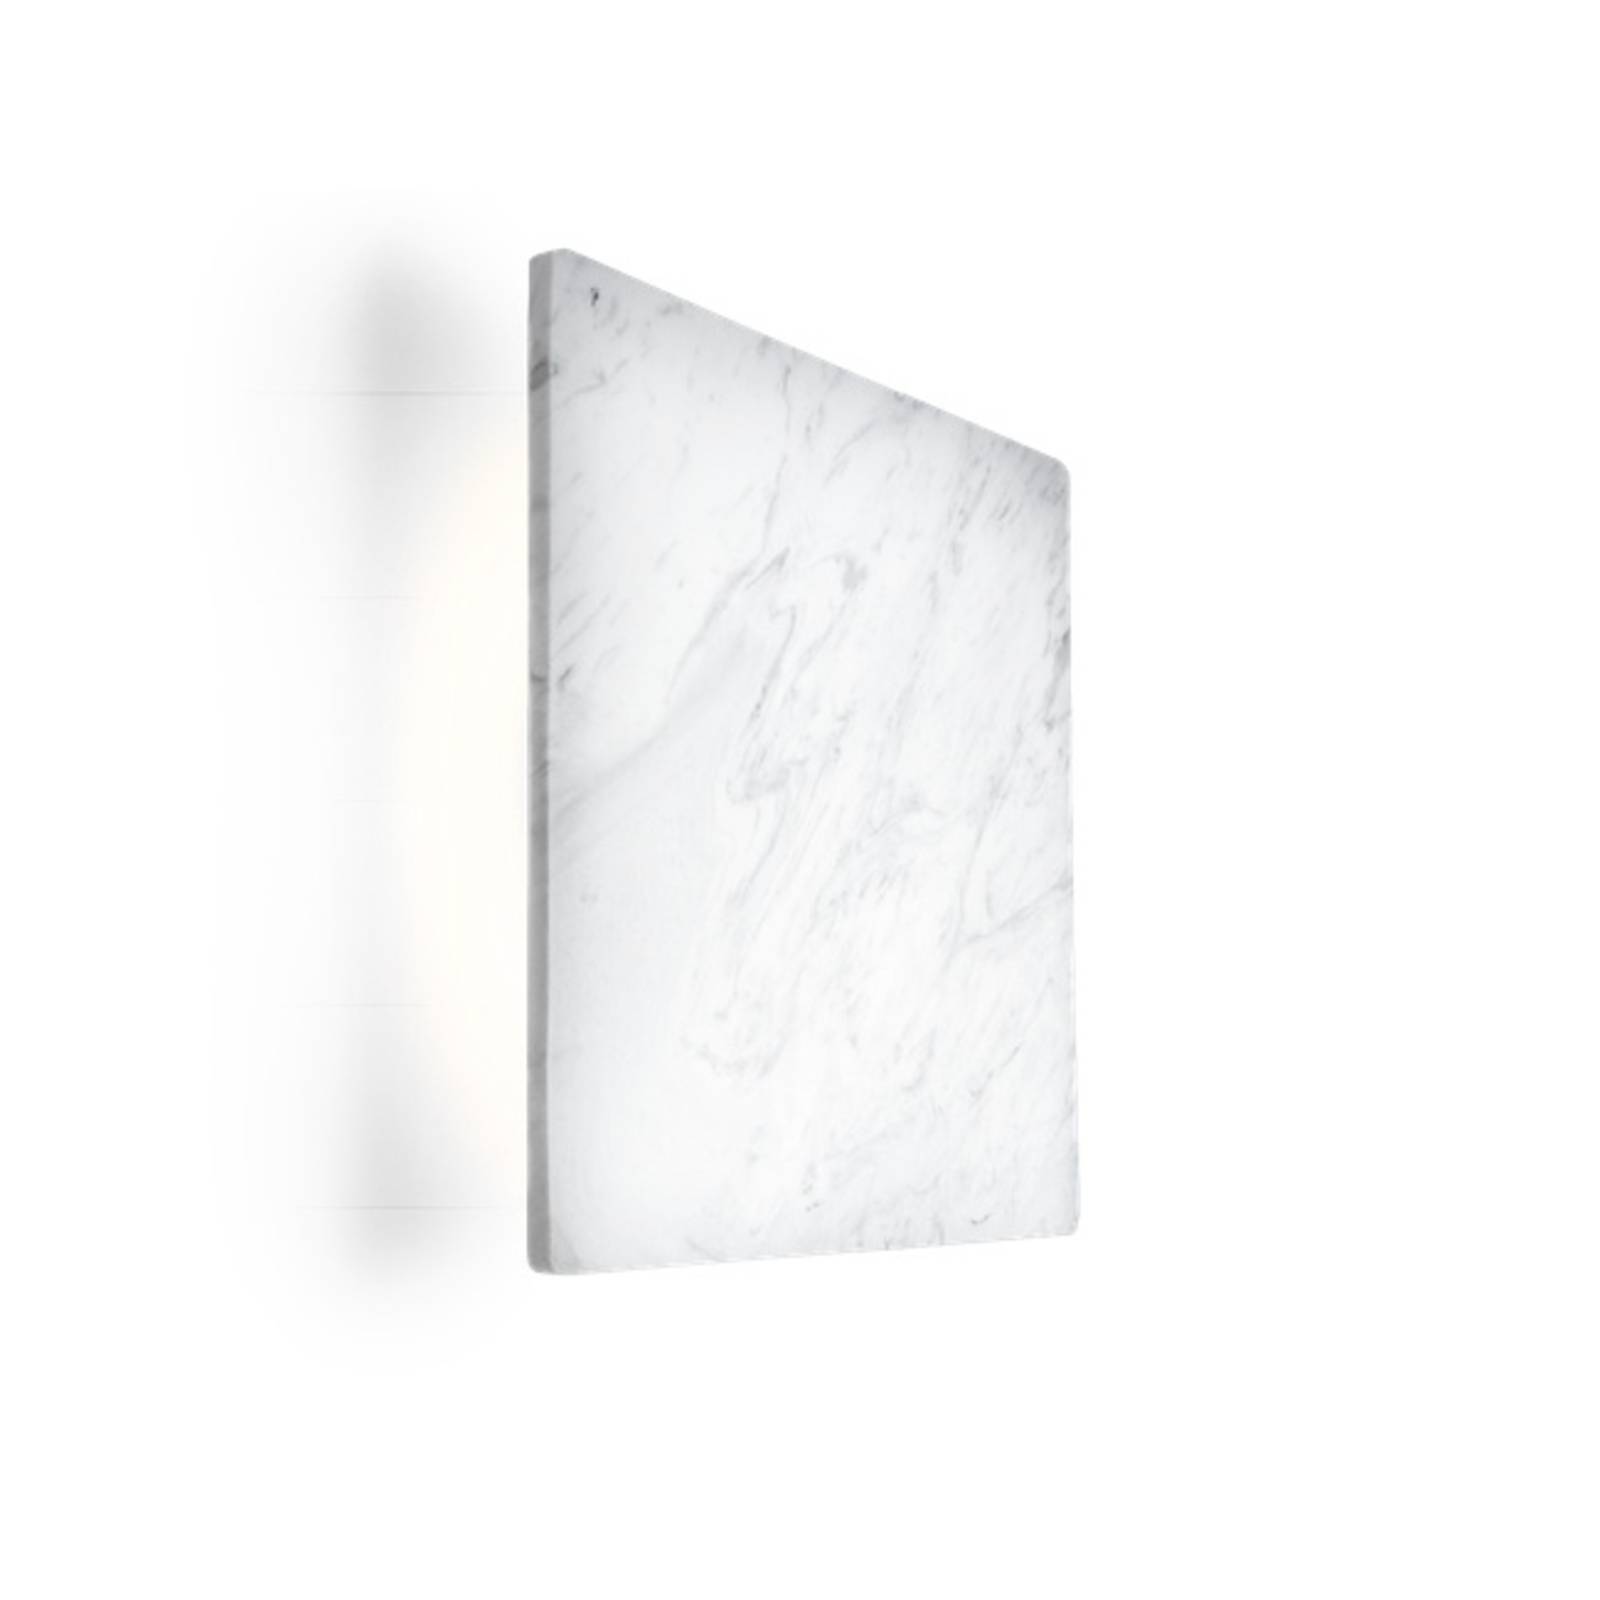 Wever & ducré lighting wever & ducré miles 3.0 wall 30x30cm márvány fehér